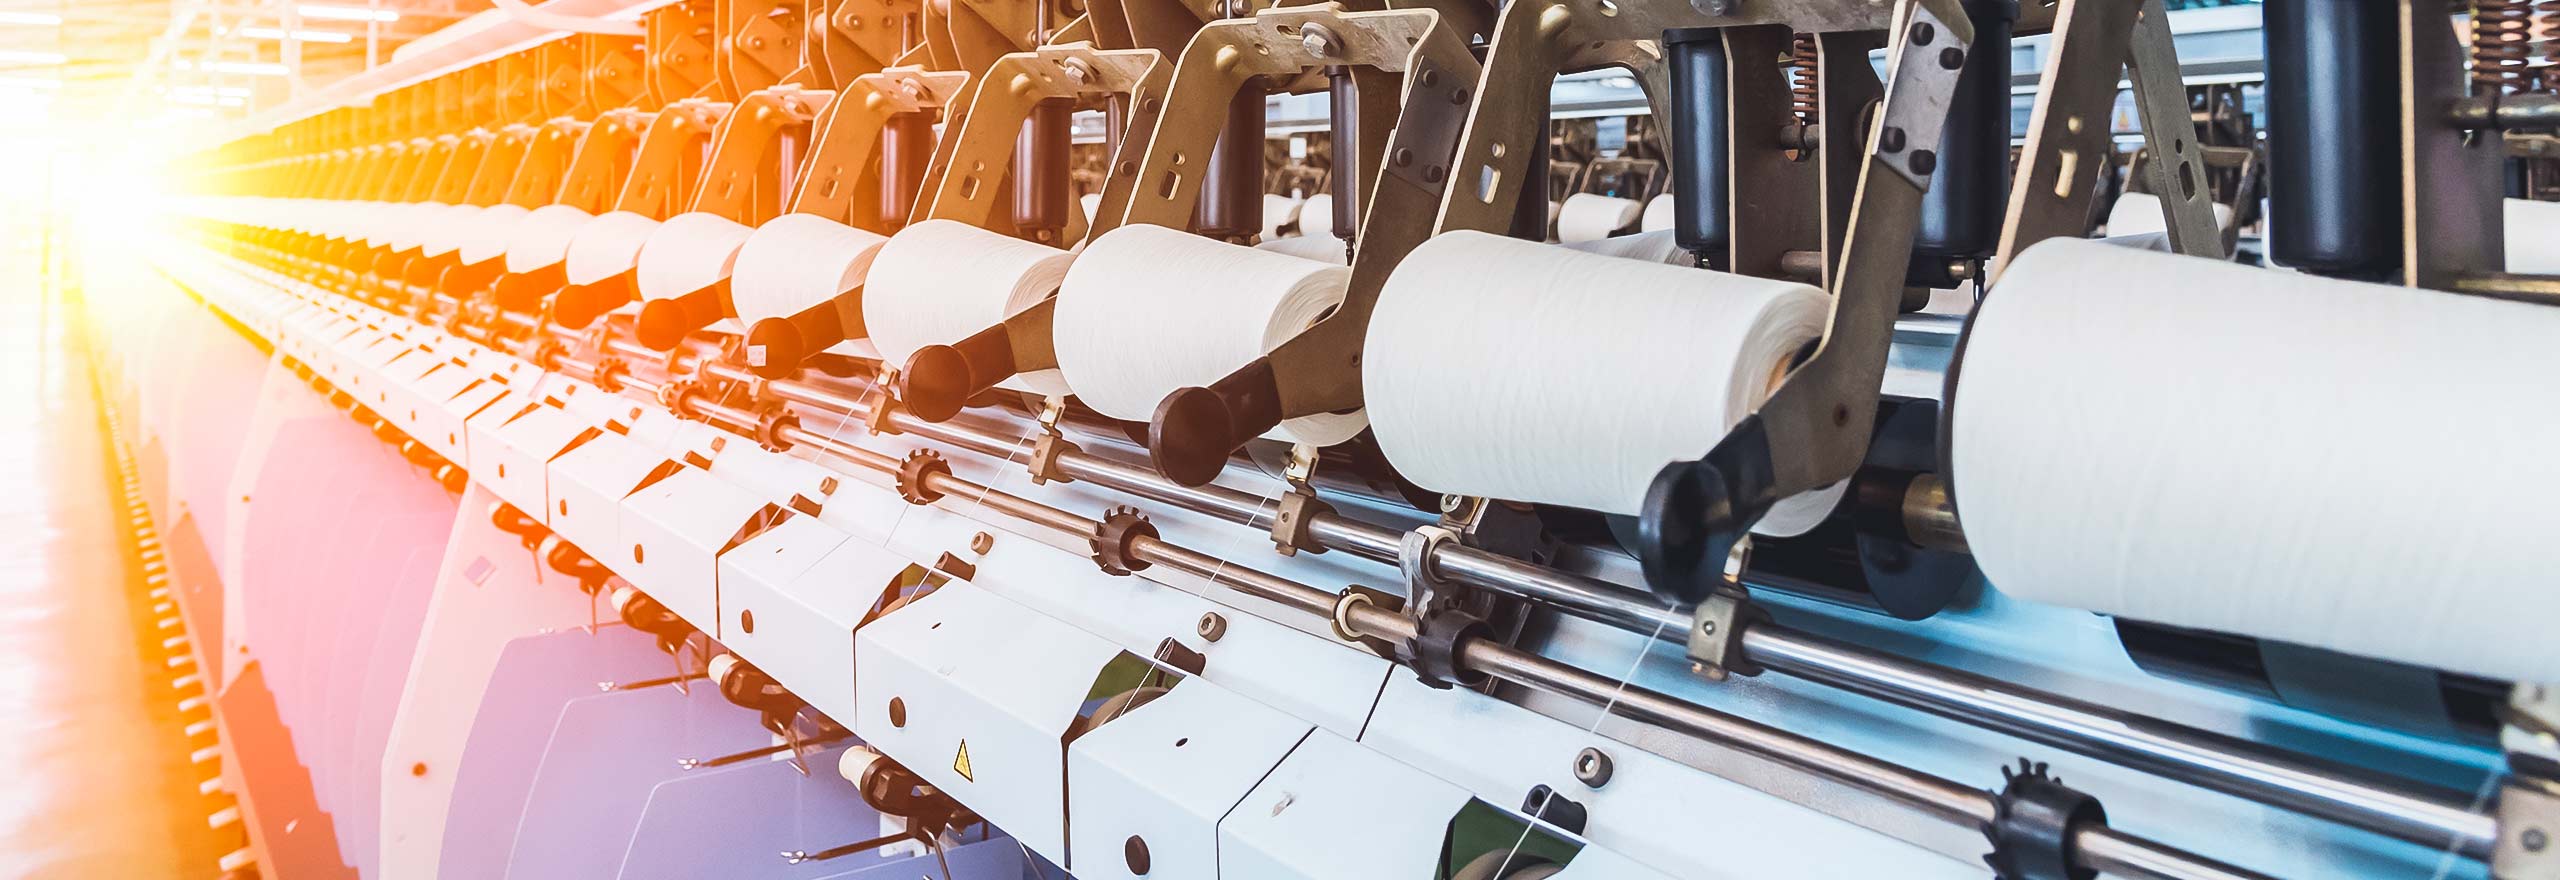 Herstellung von Papierhandtüchern in einer Produktionsanlage